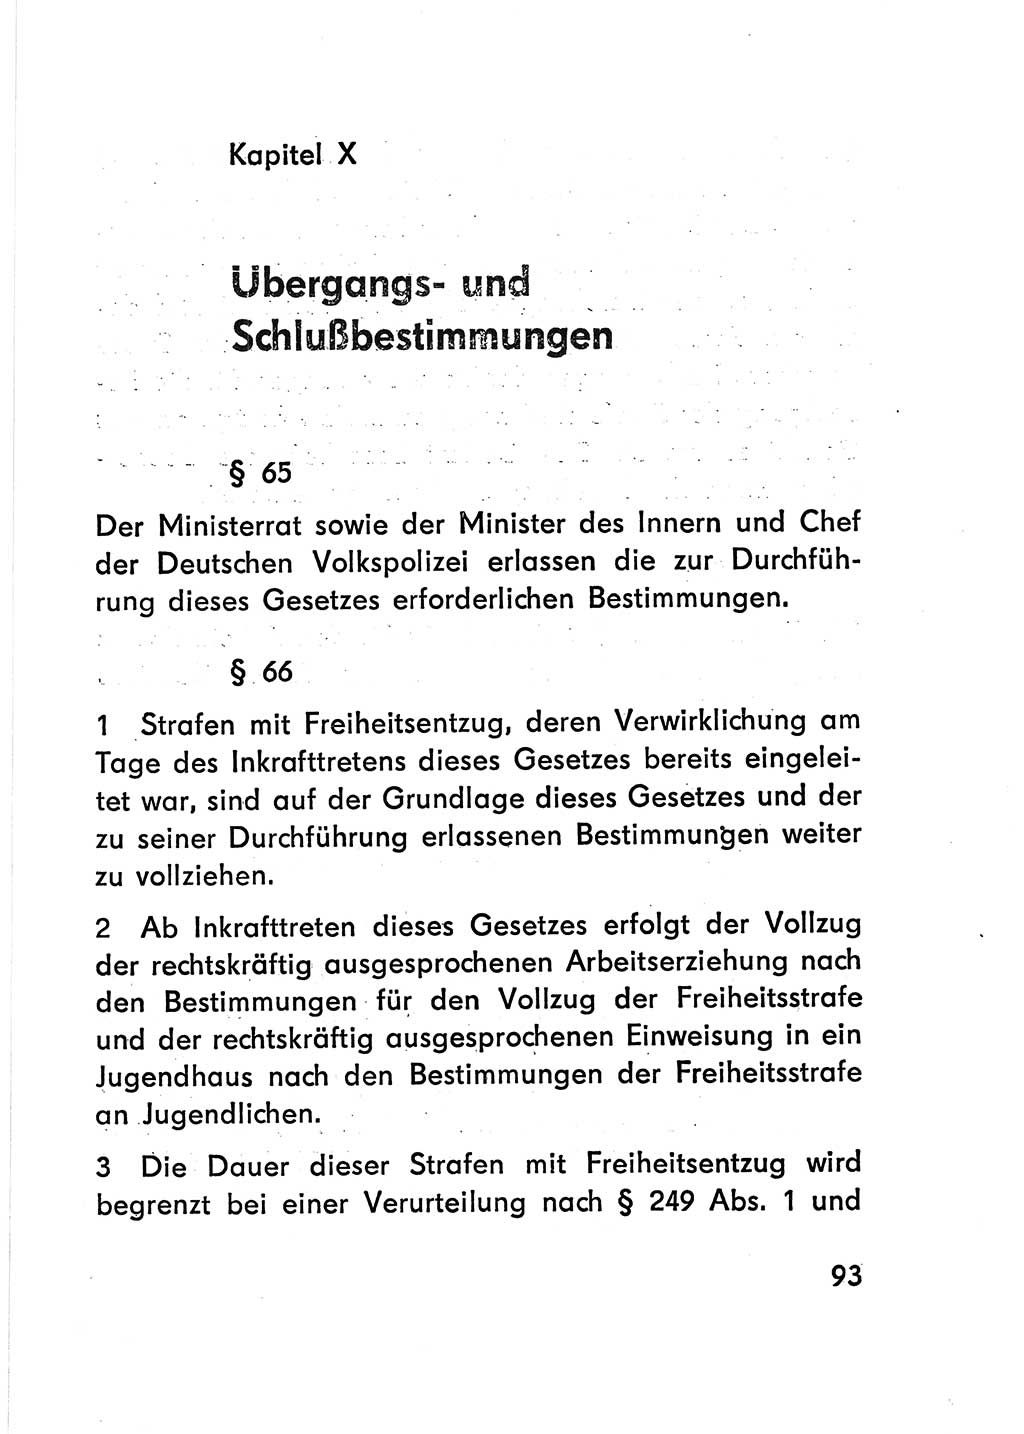 Gesetz über den Vollzug der Strafen mit Freiheitsentzug (Strafvollzugsgesetz) - StVG - [Deutsche Demokratische Republik (DDR)] 1977, Seite 93 (StVG DDR 1977, S. 93)